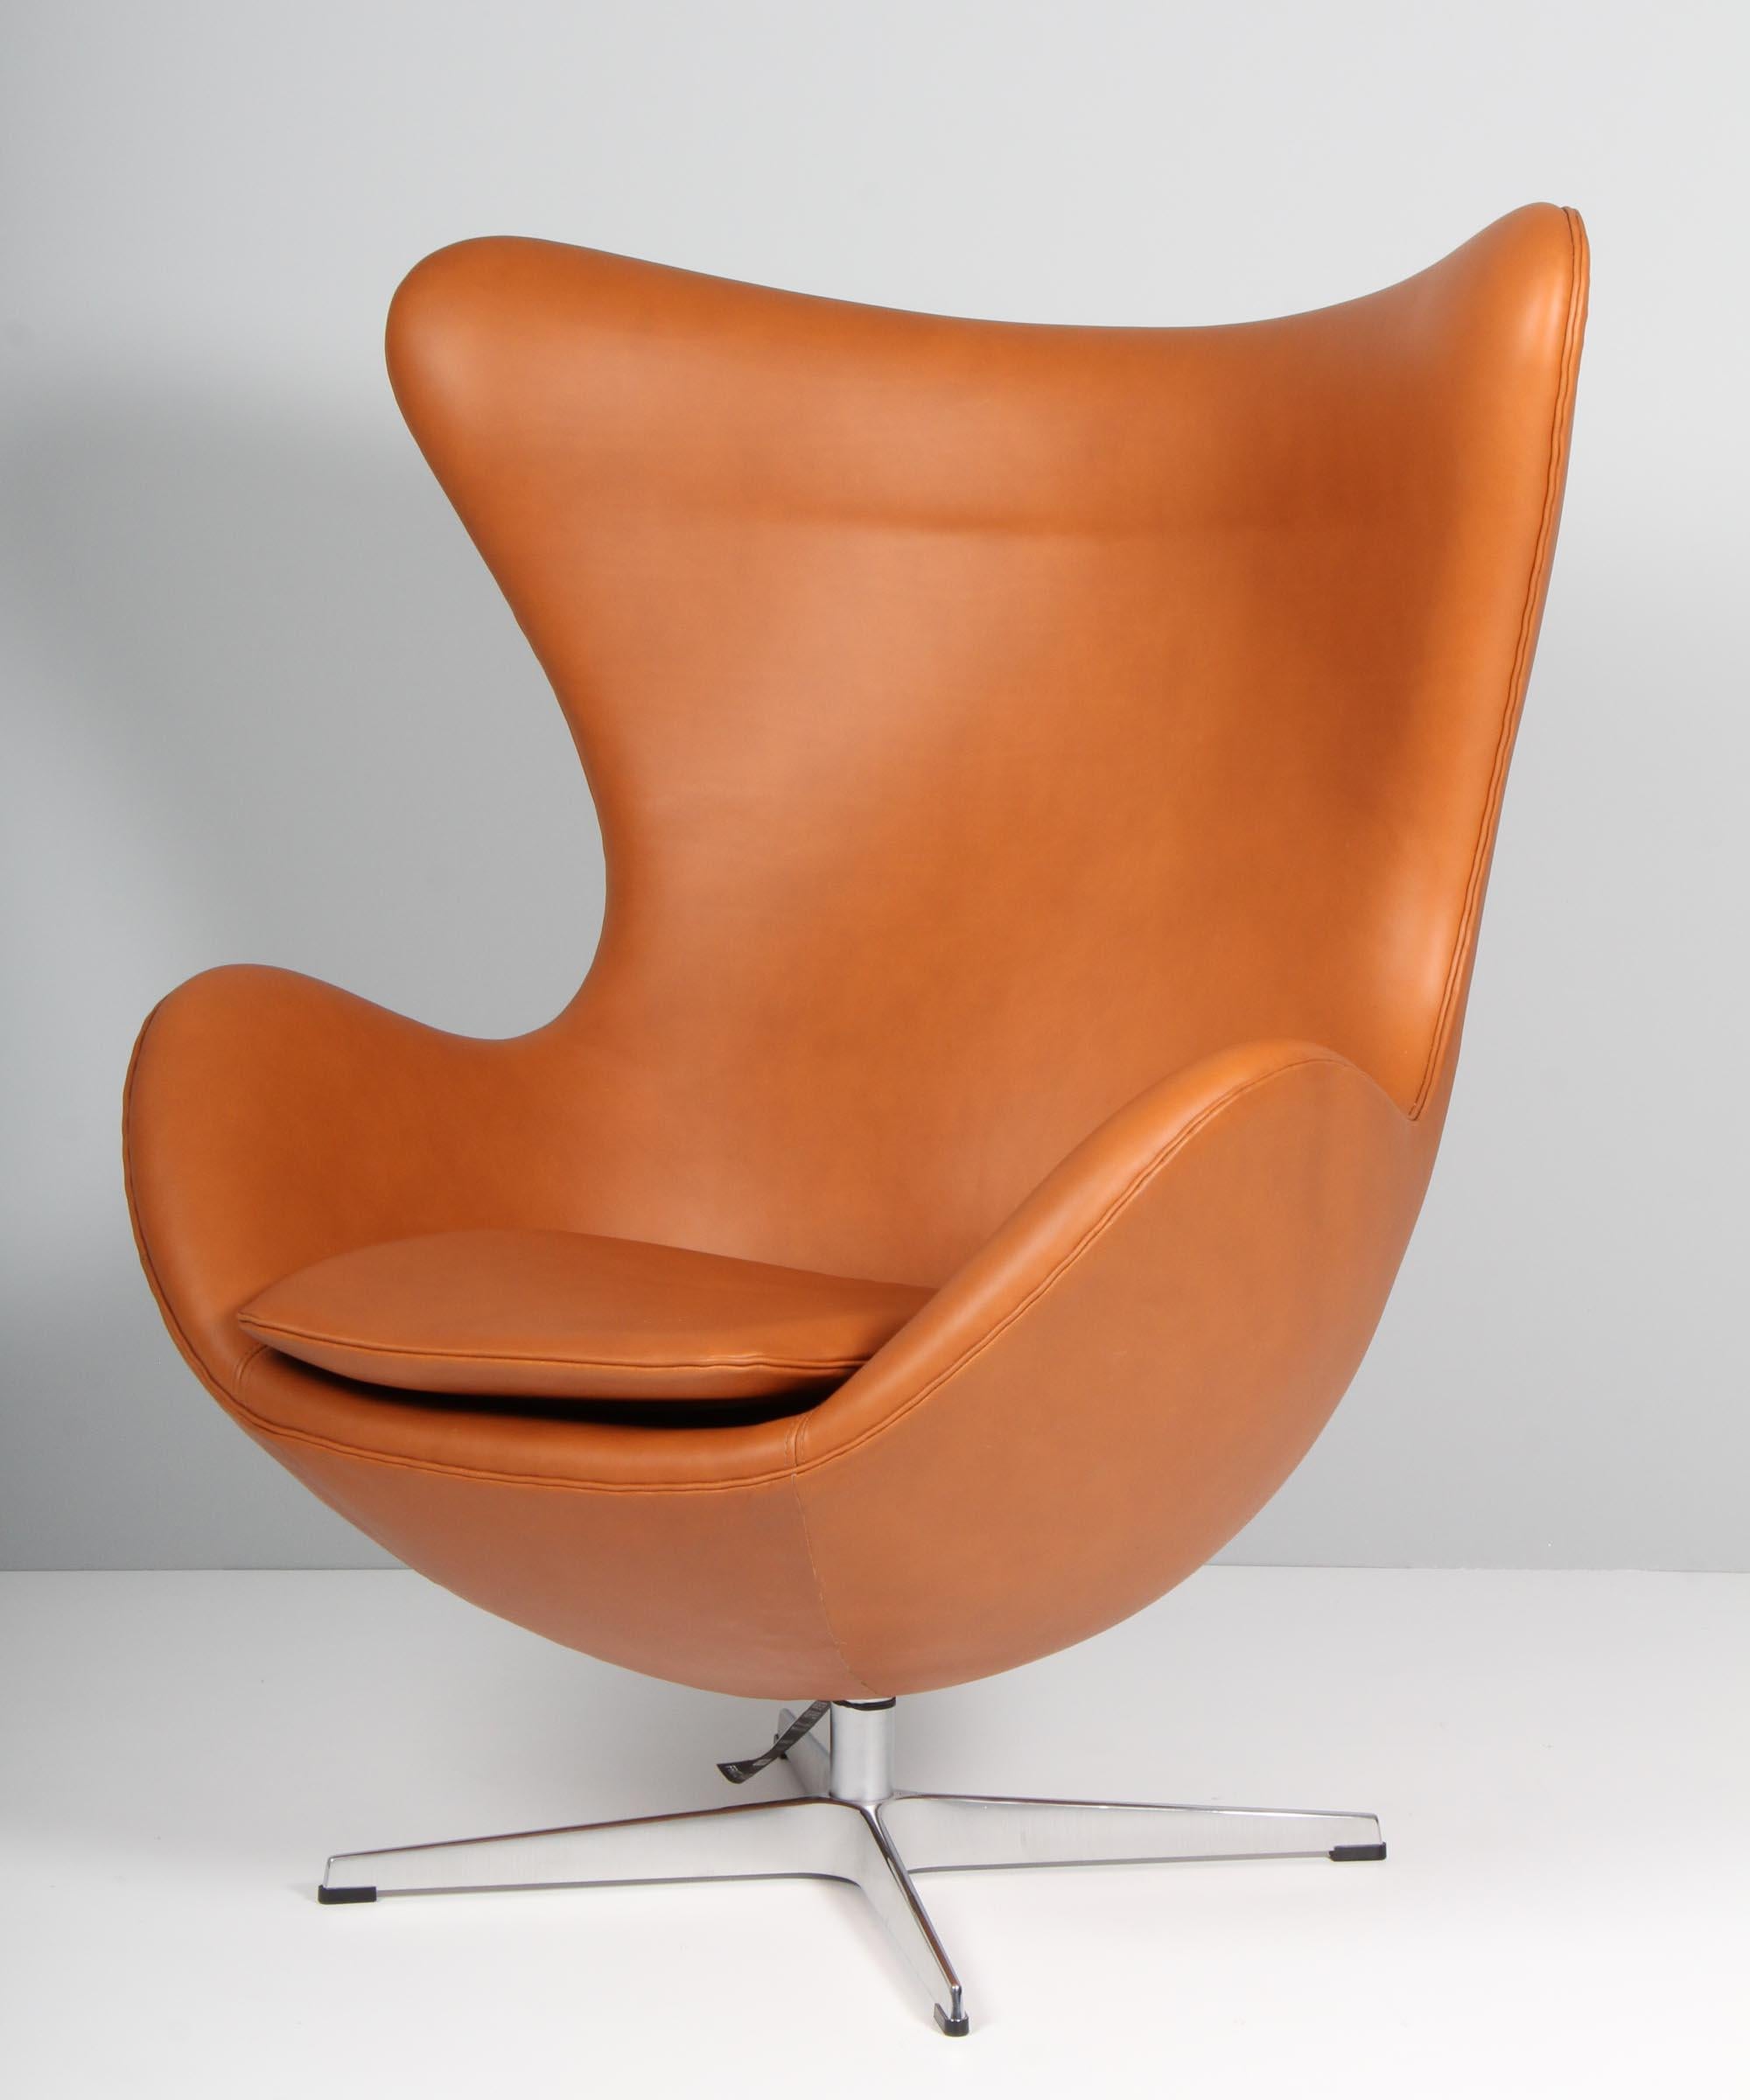 Nouvel ensemble de chaises longues Arne Jacobsen modèle Egg. Nouveau rembourrage en cuir aniline de couleur noyer.

Base quatre étoiles avec fonction d'inclinaison.

Fabriqué par Fritz Hansen.

Cette chaise iconique est l'une des plus célèbres